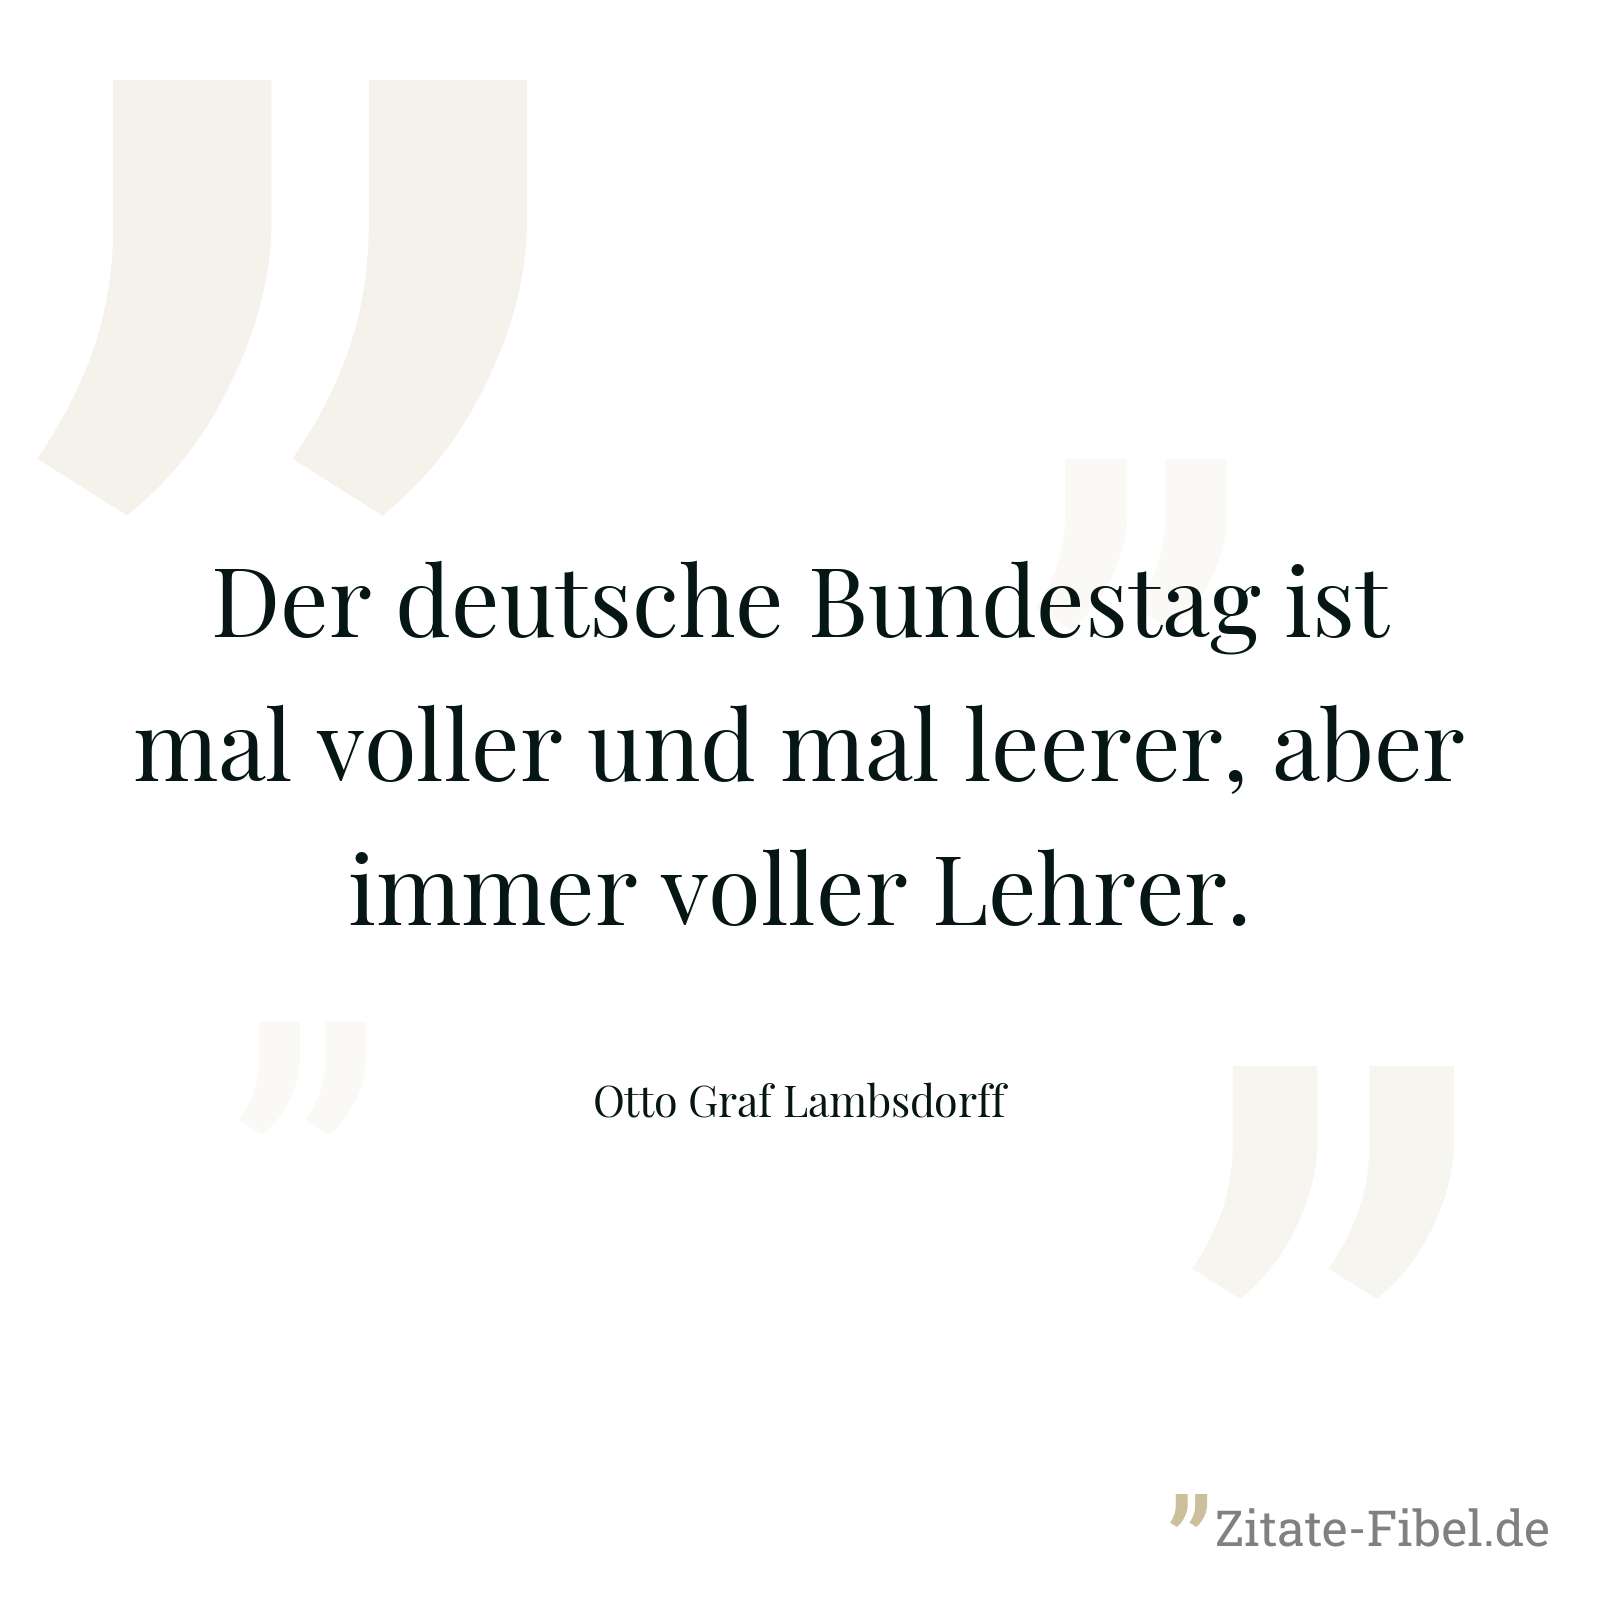 Der deutsche Bundestag ist mal voller und mal leerer, aber immer voller Lehrer. - Otto Graf Lambsdorff